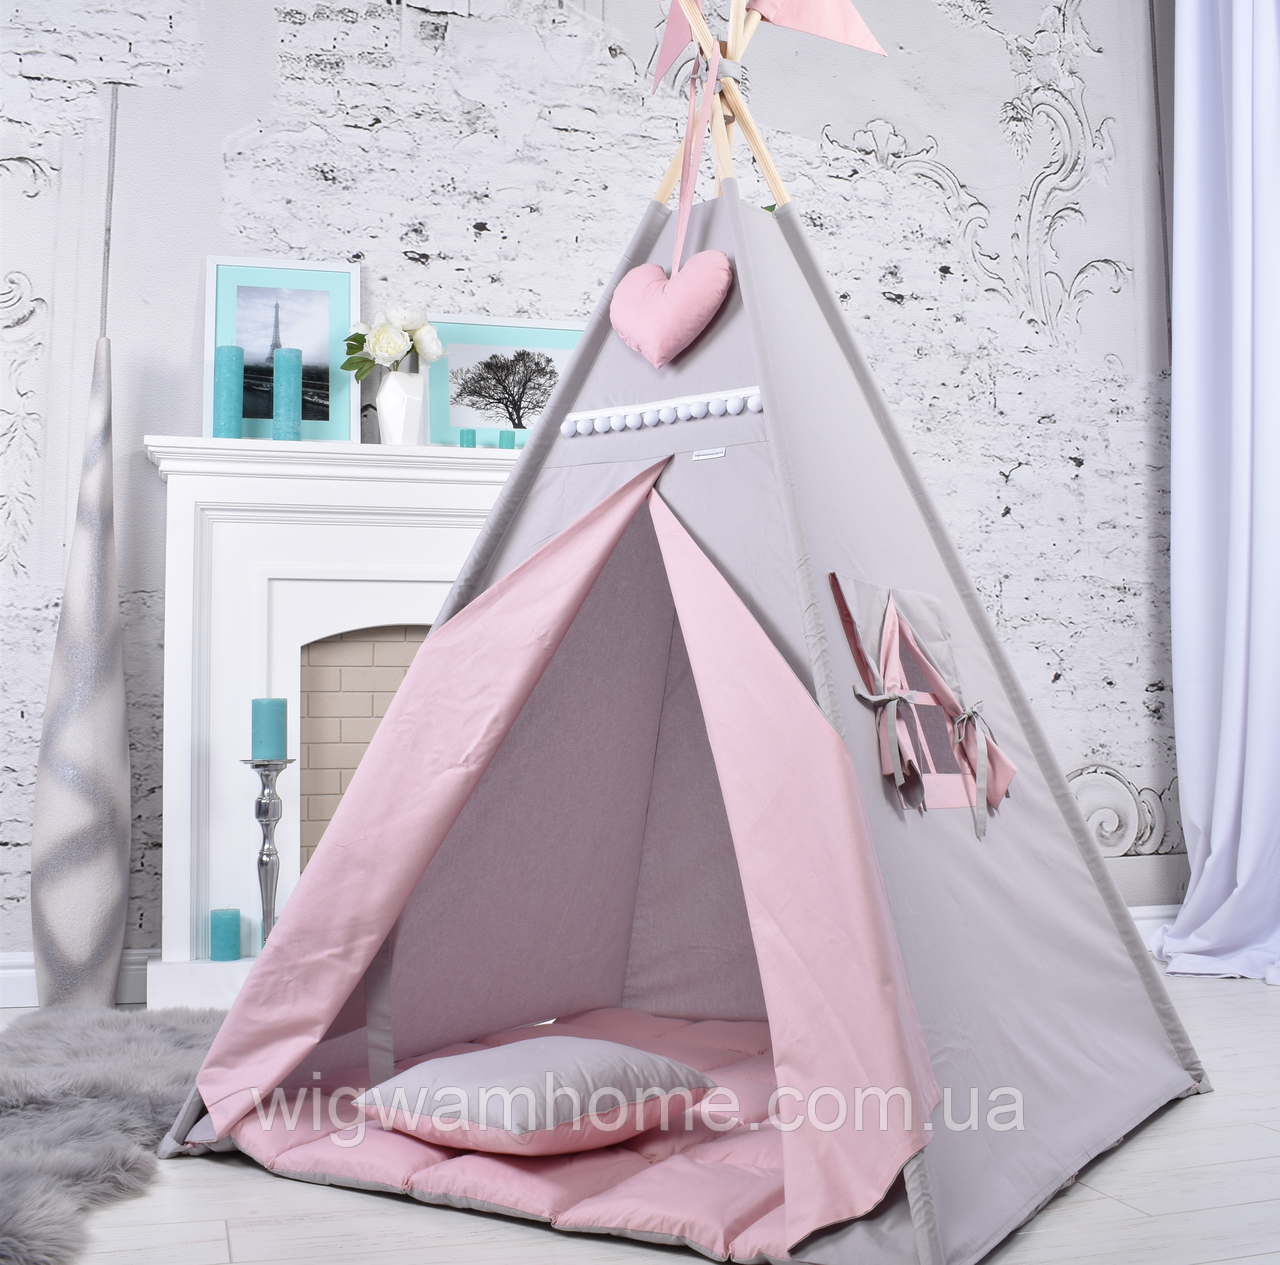 Палатка Вігвам для дівчинки Пудрово-сірий, Повний комплект, Підвіска сердечко та Прапорці на палиці - у подарунок NEW